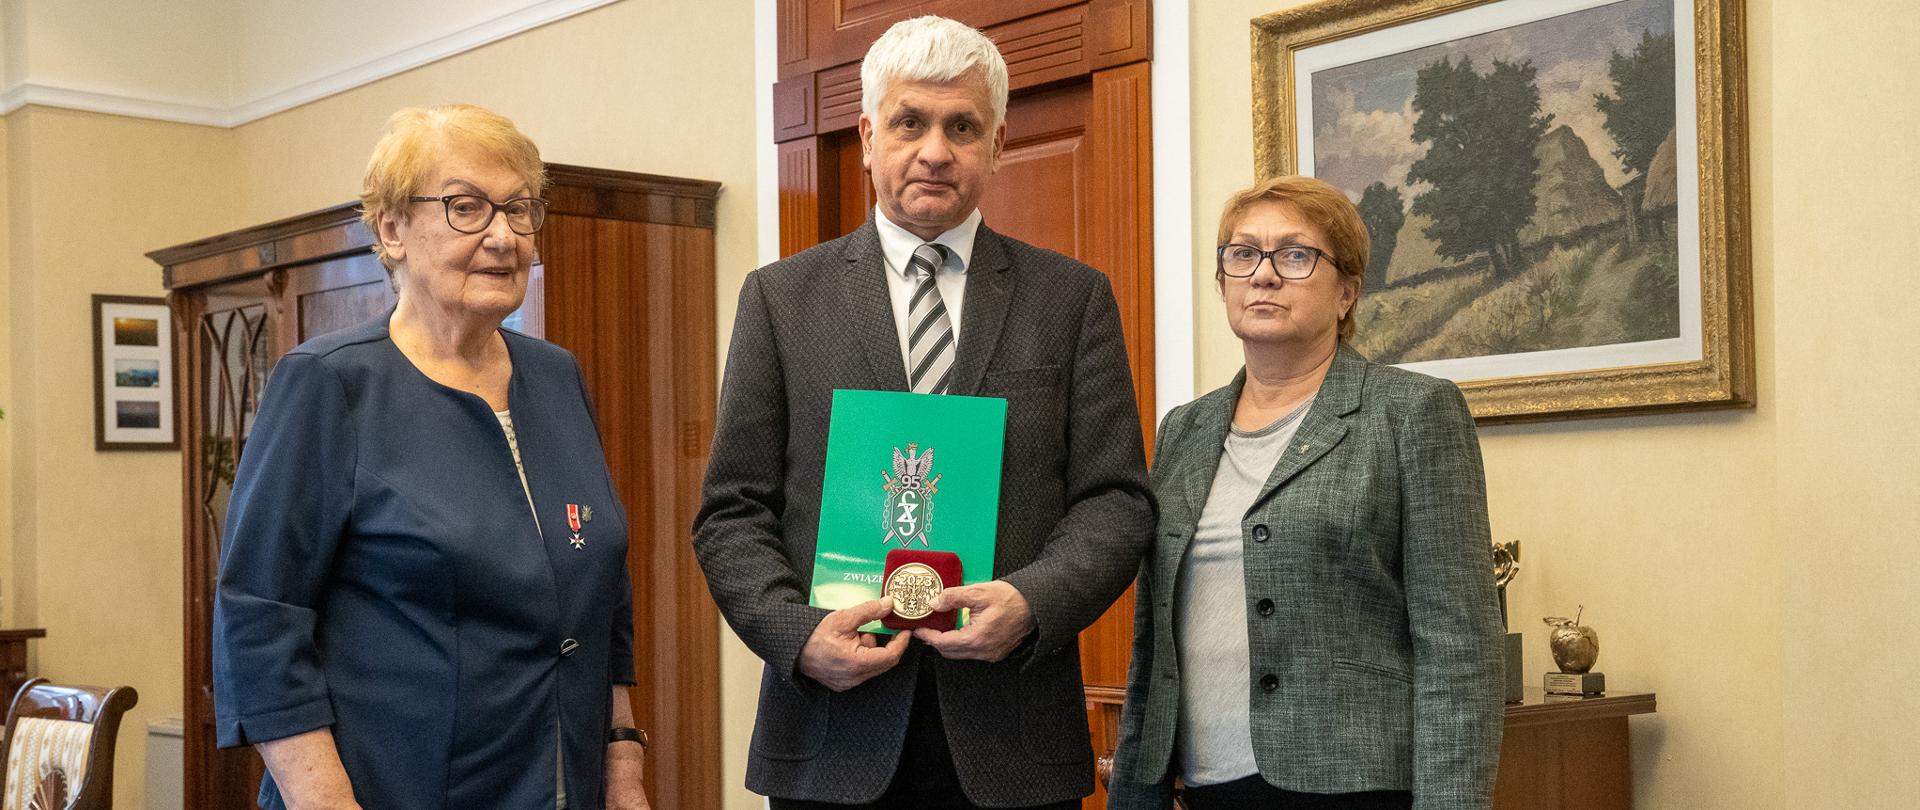 Wojewoda podlaski otrzymał Medal Pamiątkowy Związku Sybiraków